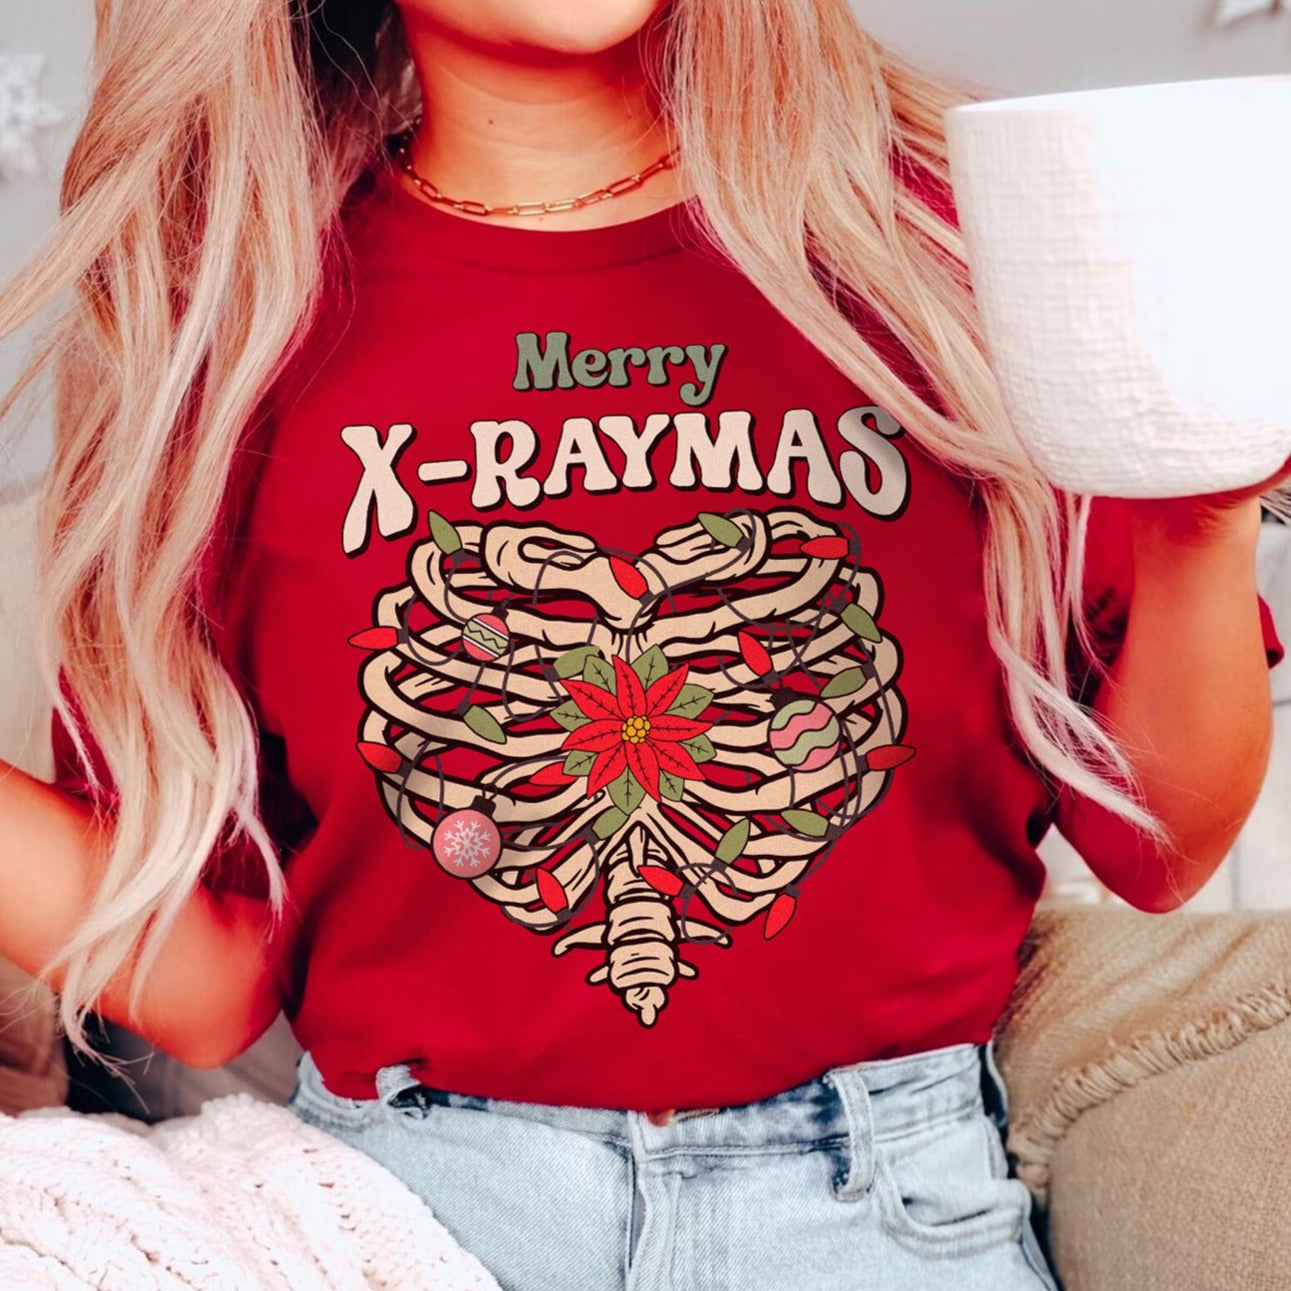 Merry X-Raymas T-Shirt